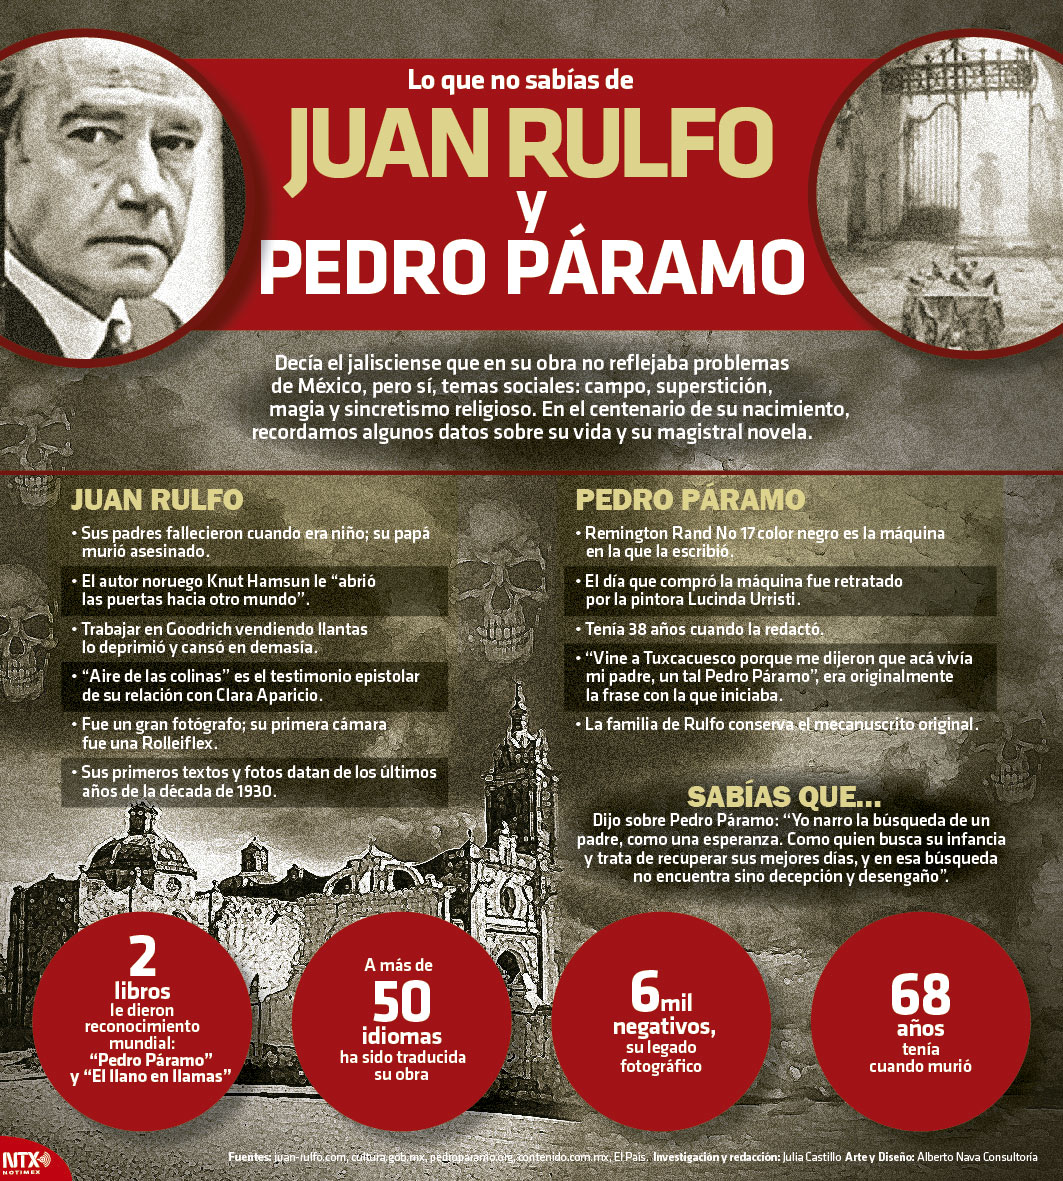 Lo que no sabas de Juan Rulfo y Pedro Pramo